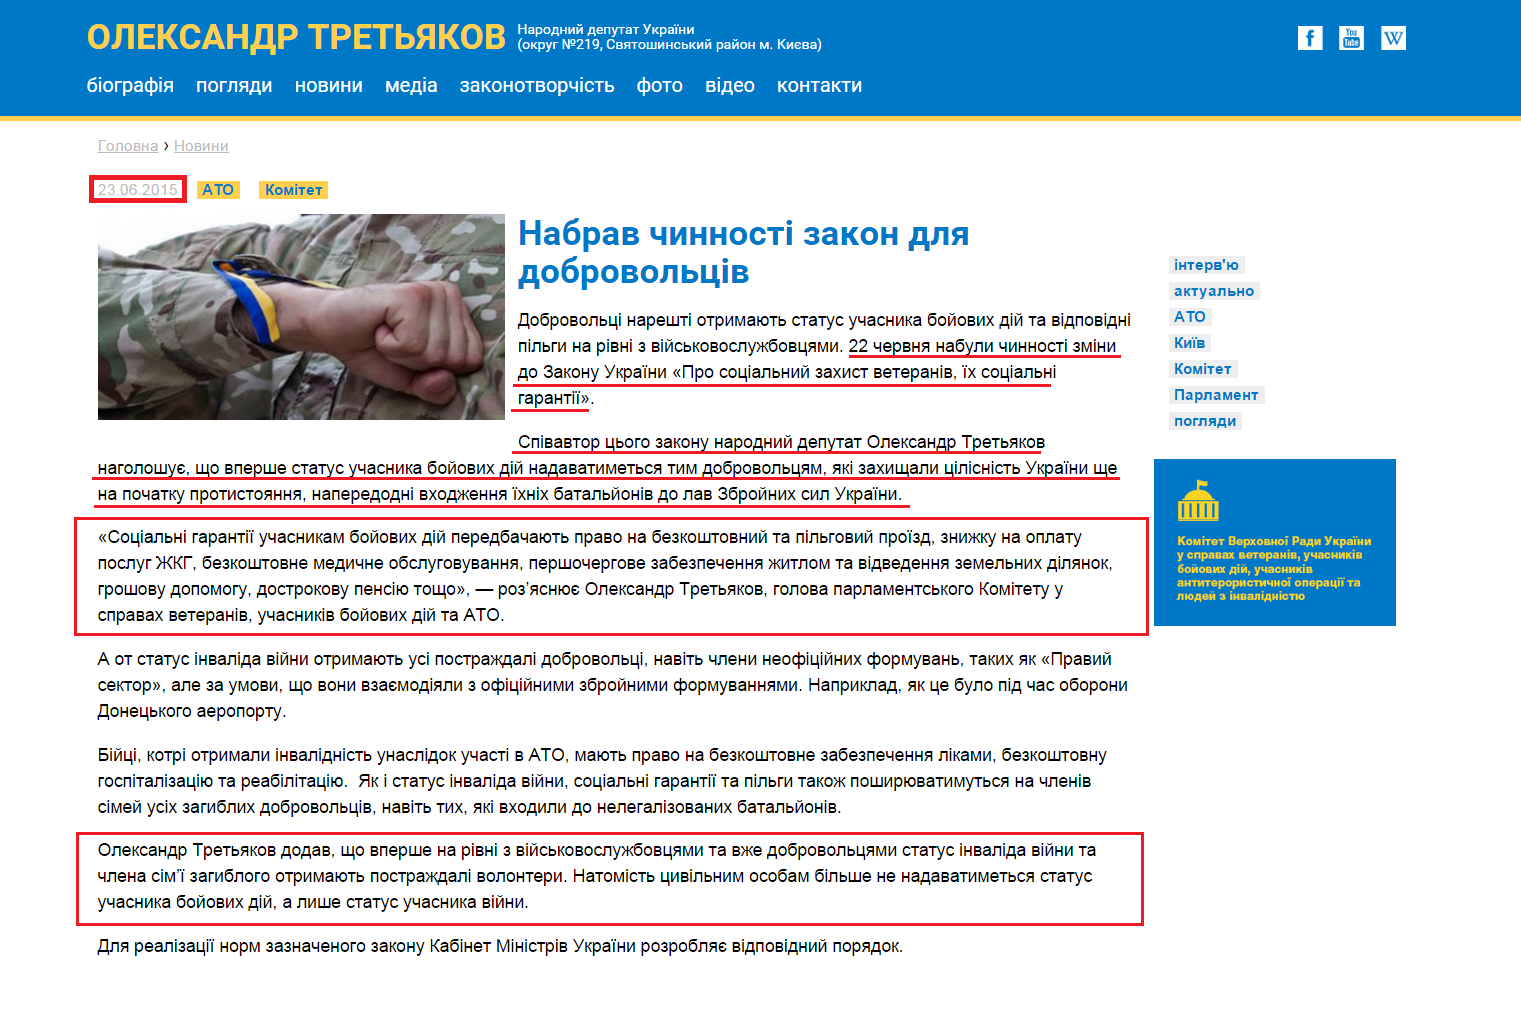 http://tretiakov.org/news/nabrav-chynnosti-zakon-dlya-dobrovolciv